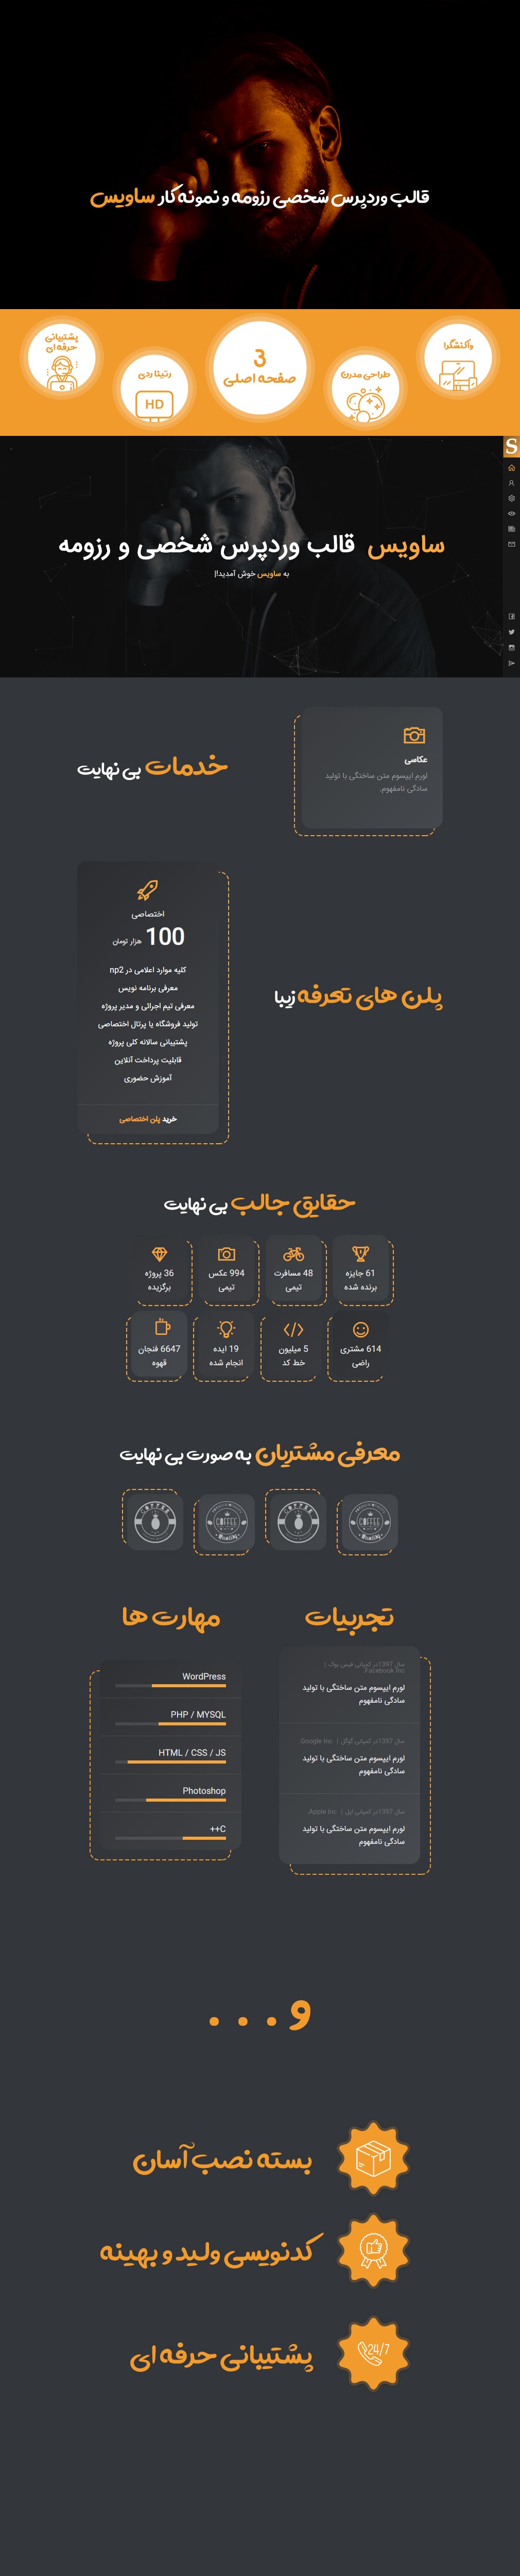 قالب Savis قالب وردپرس شخصی و نمونه کار ایرانی